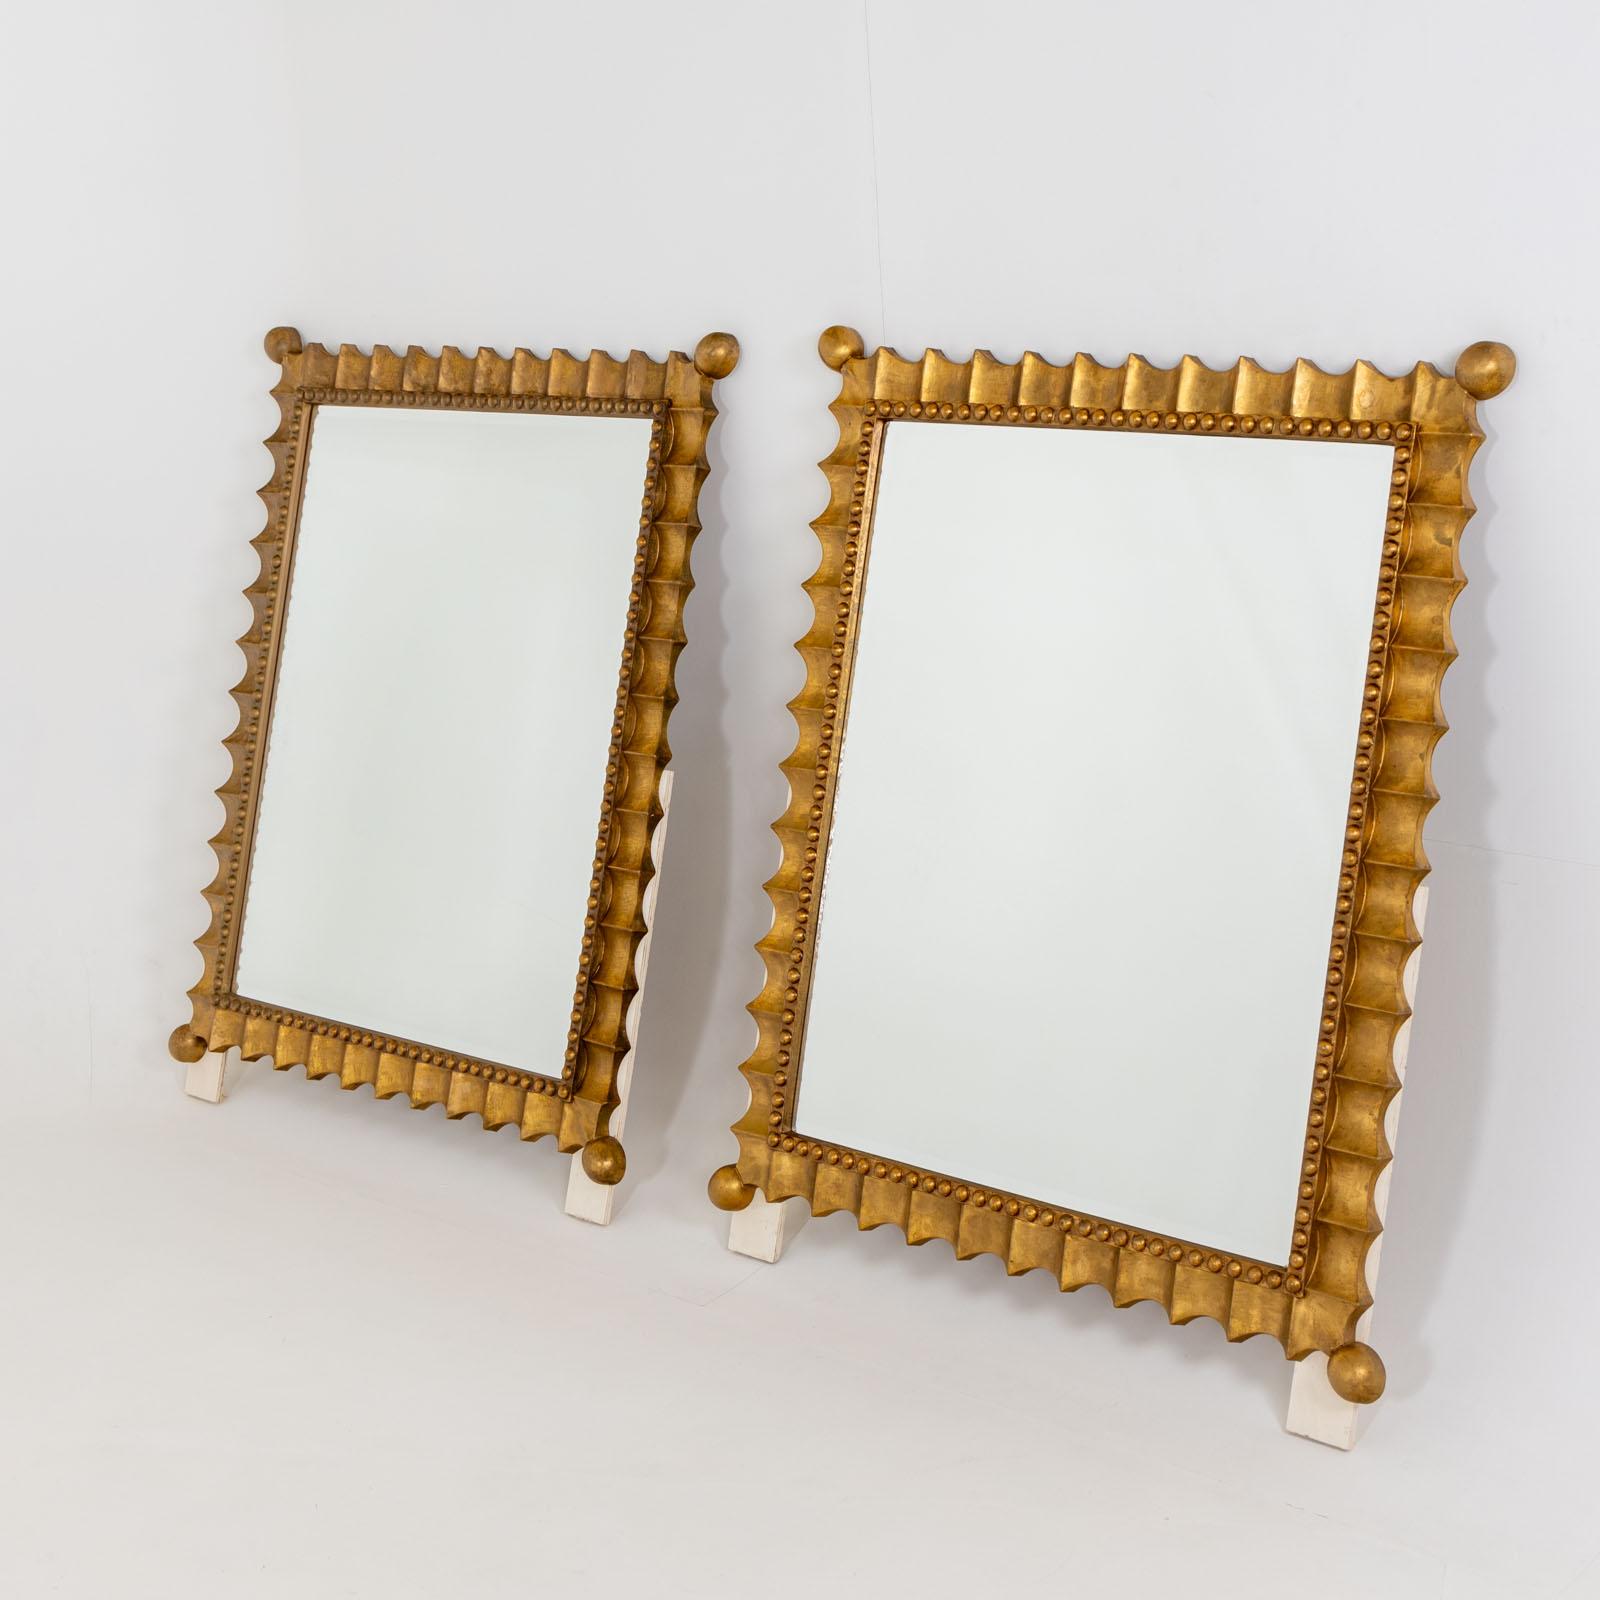 Grande paire de miroirs muraux festonnés et patinés or, milieu du 20e siècle. Ces miroirs muraux impressionnants sont dotés d'un cadre patiné or et d'un bord ondulé distinctif orné d'une décoration perlée. Les angles se terminent élégamment par des